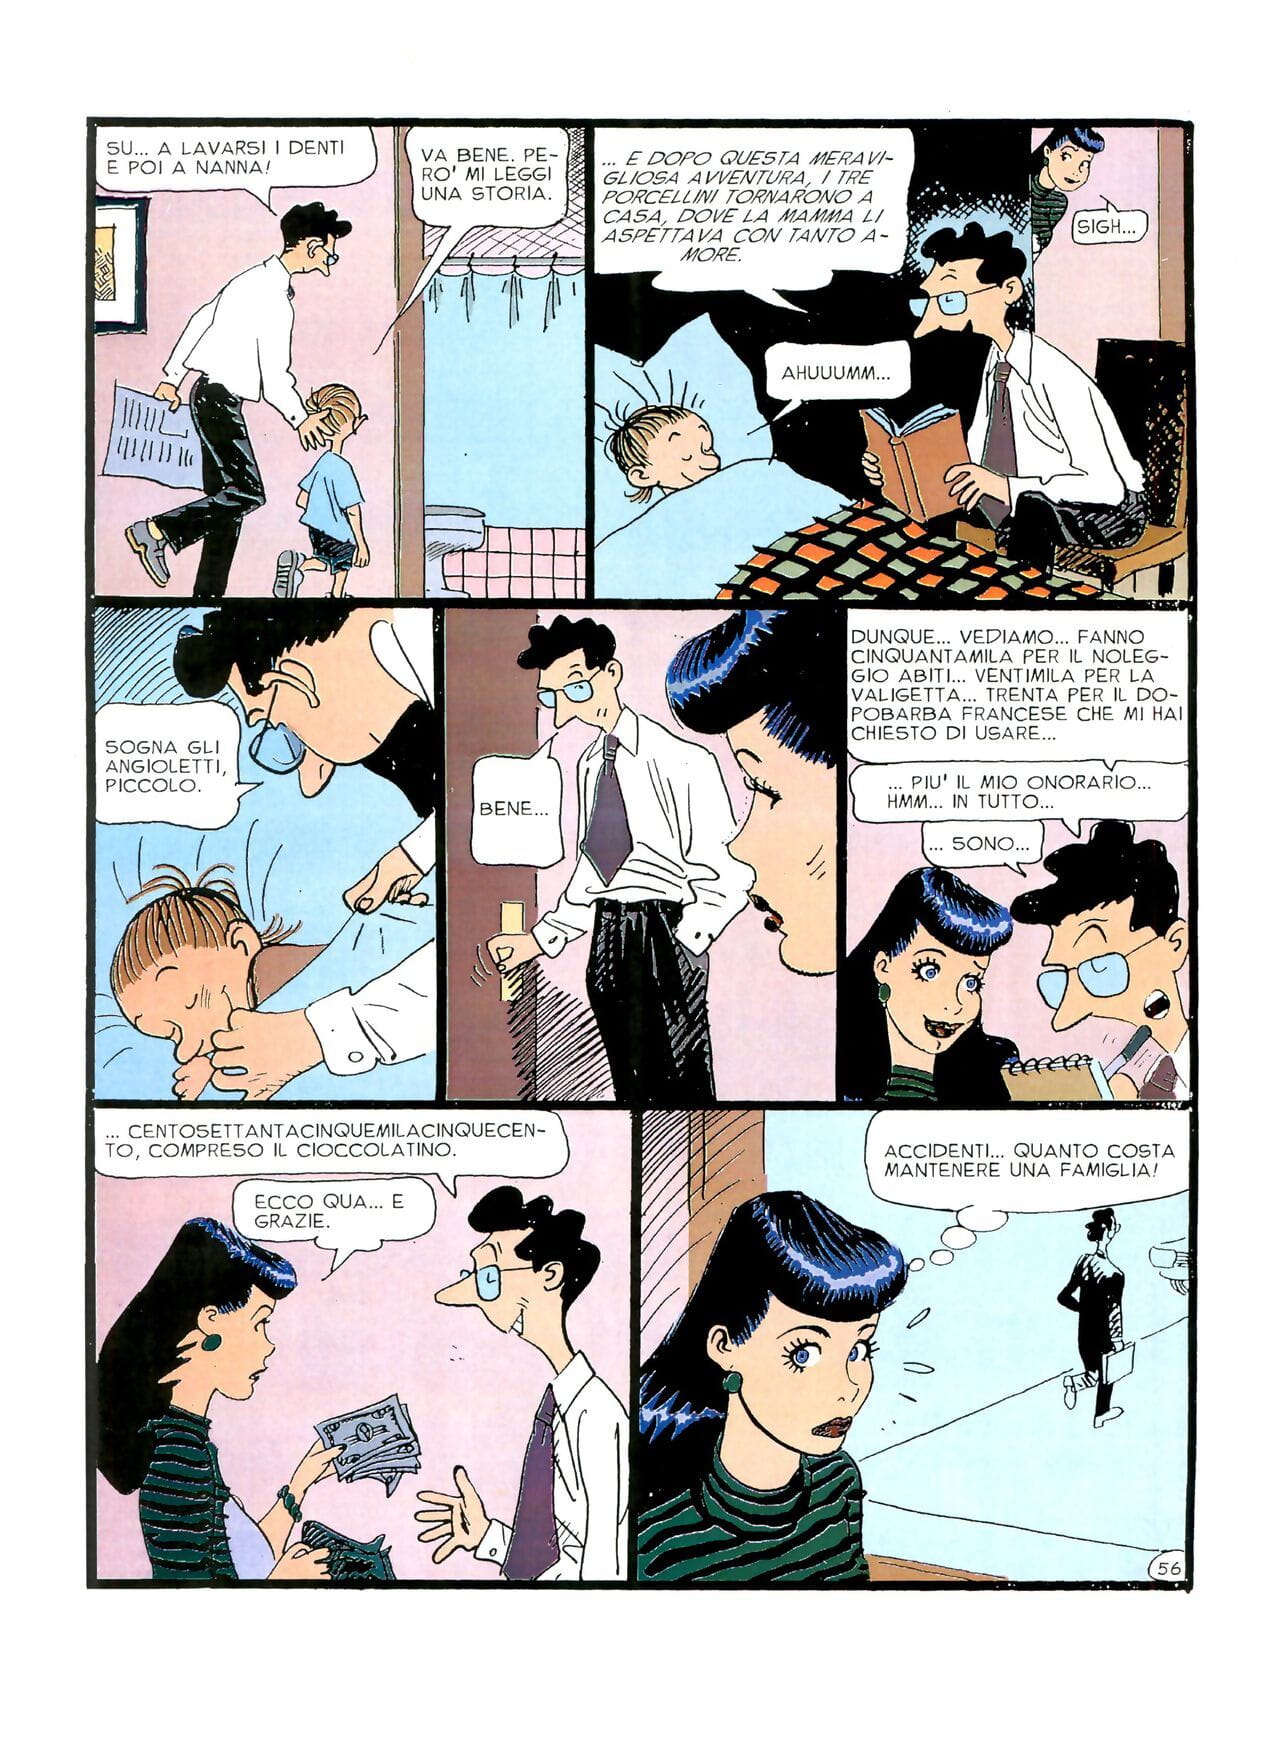 chiara Di notte #1 부품 3 page 1